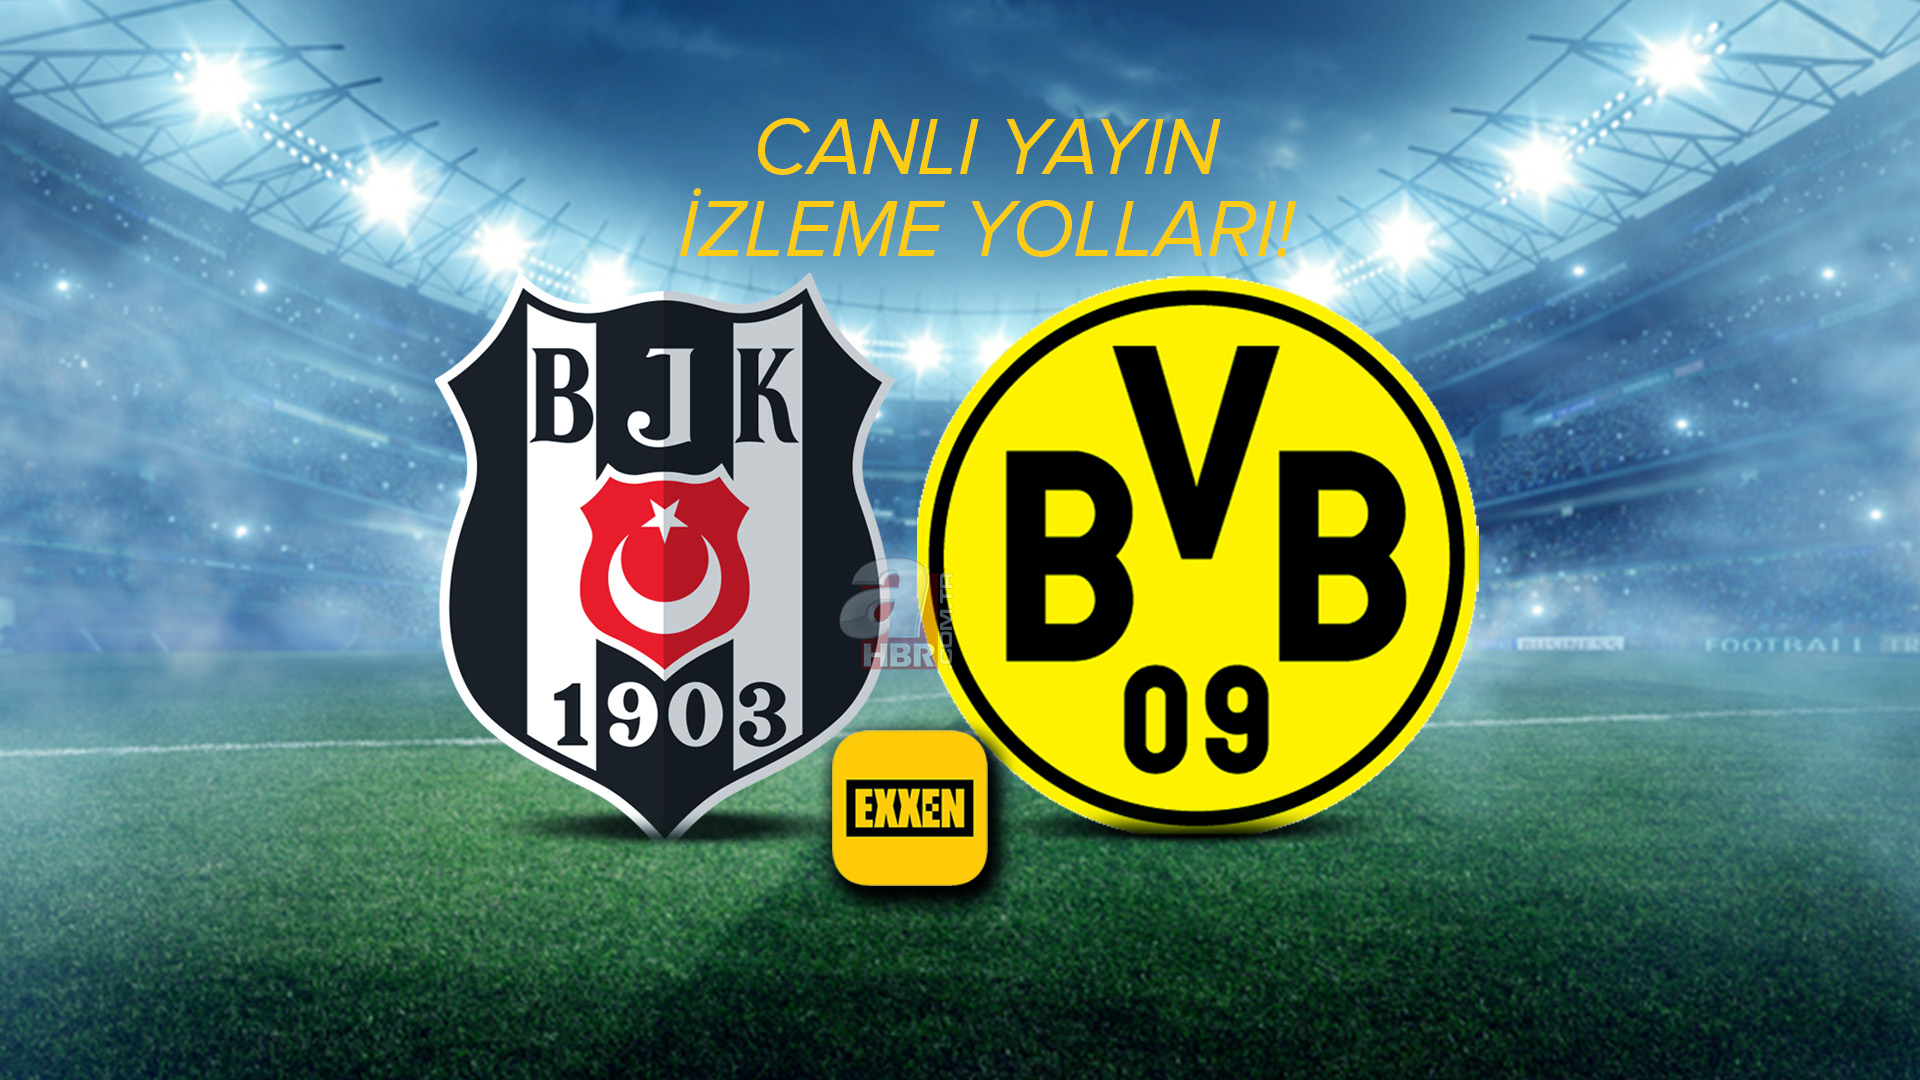 Exxen Spor canlı izle: BJK Dortmund maçı canlı yayın izleme yolları! Beşiktaş Borussia Dortmund maçı şifreli mi, şifresiz mi?